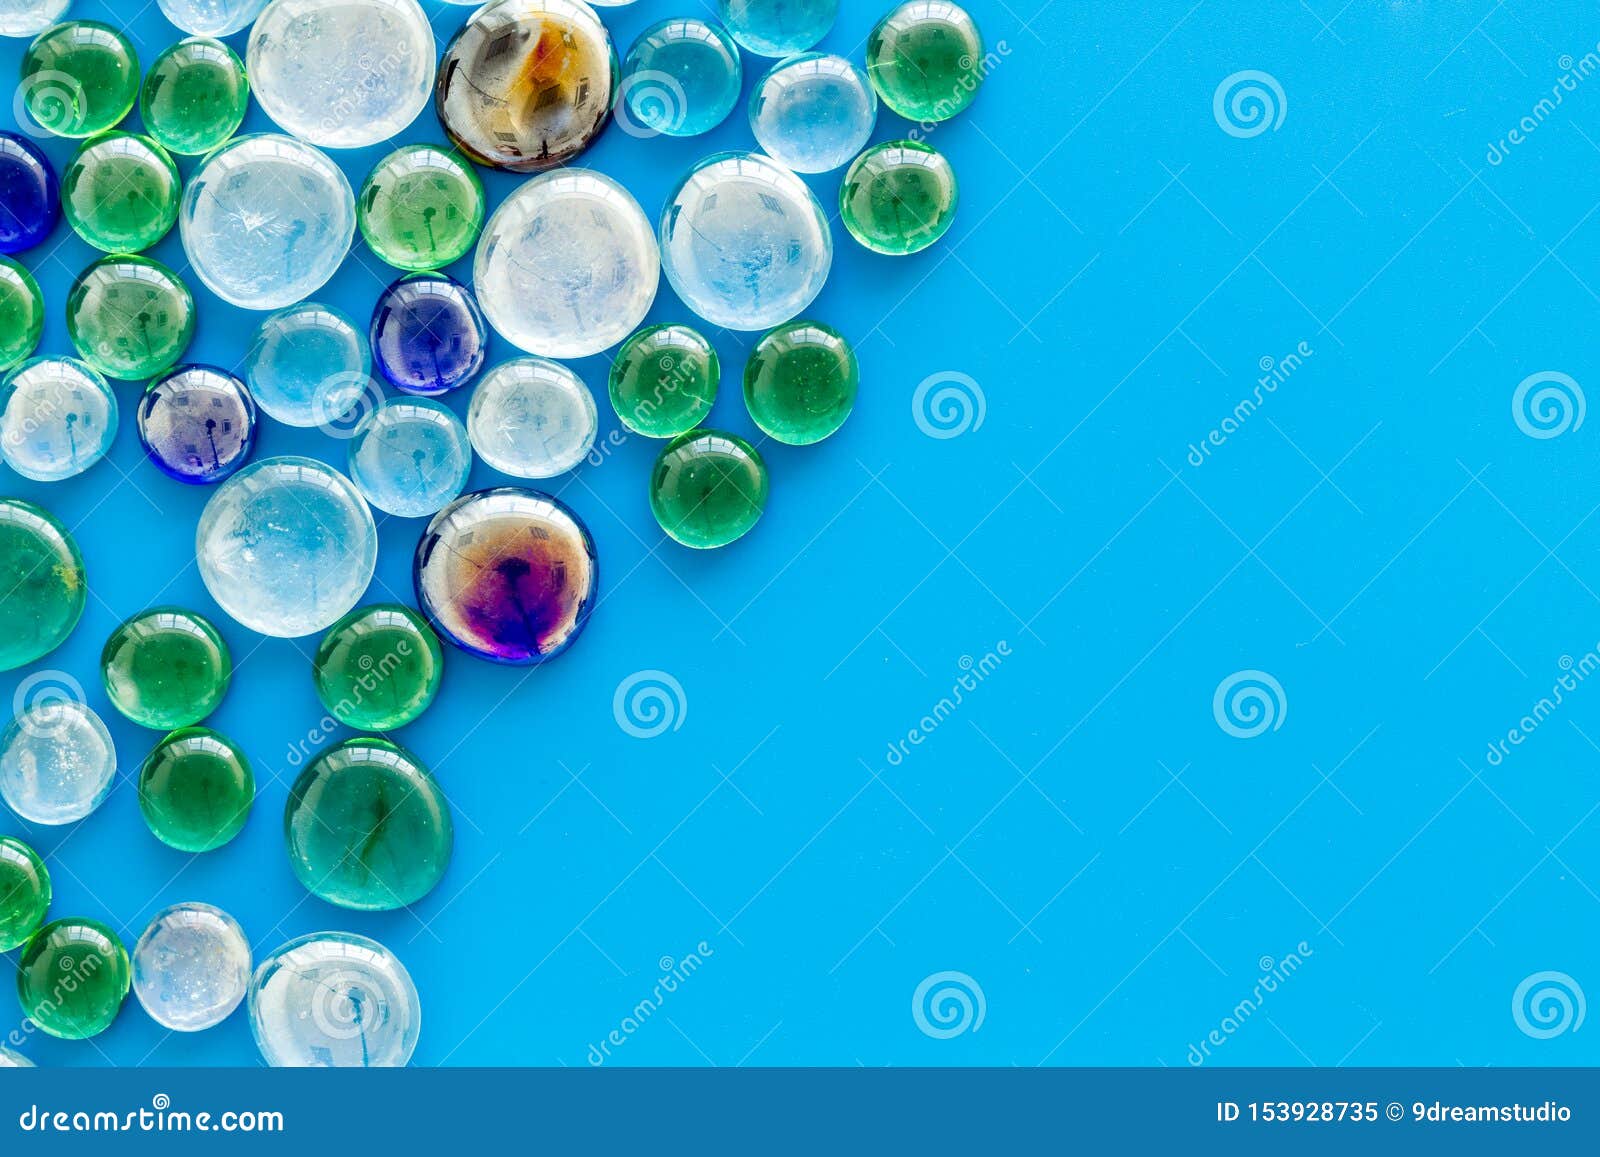 Glass gem stone pebbles for decoration home, aquarium